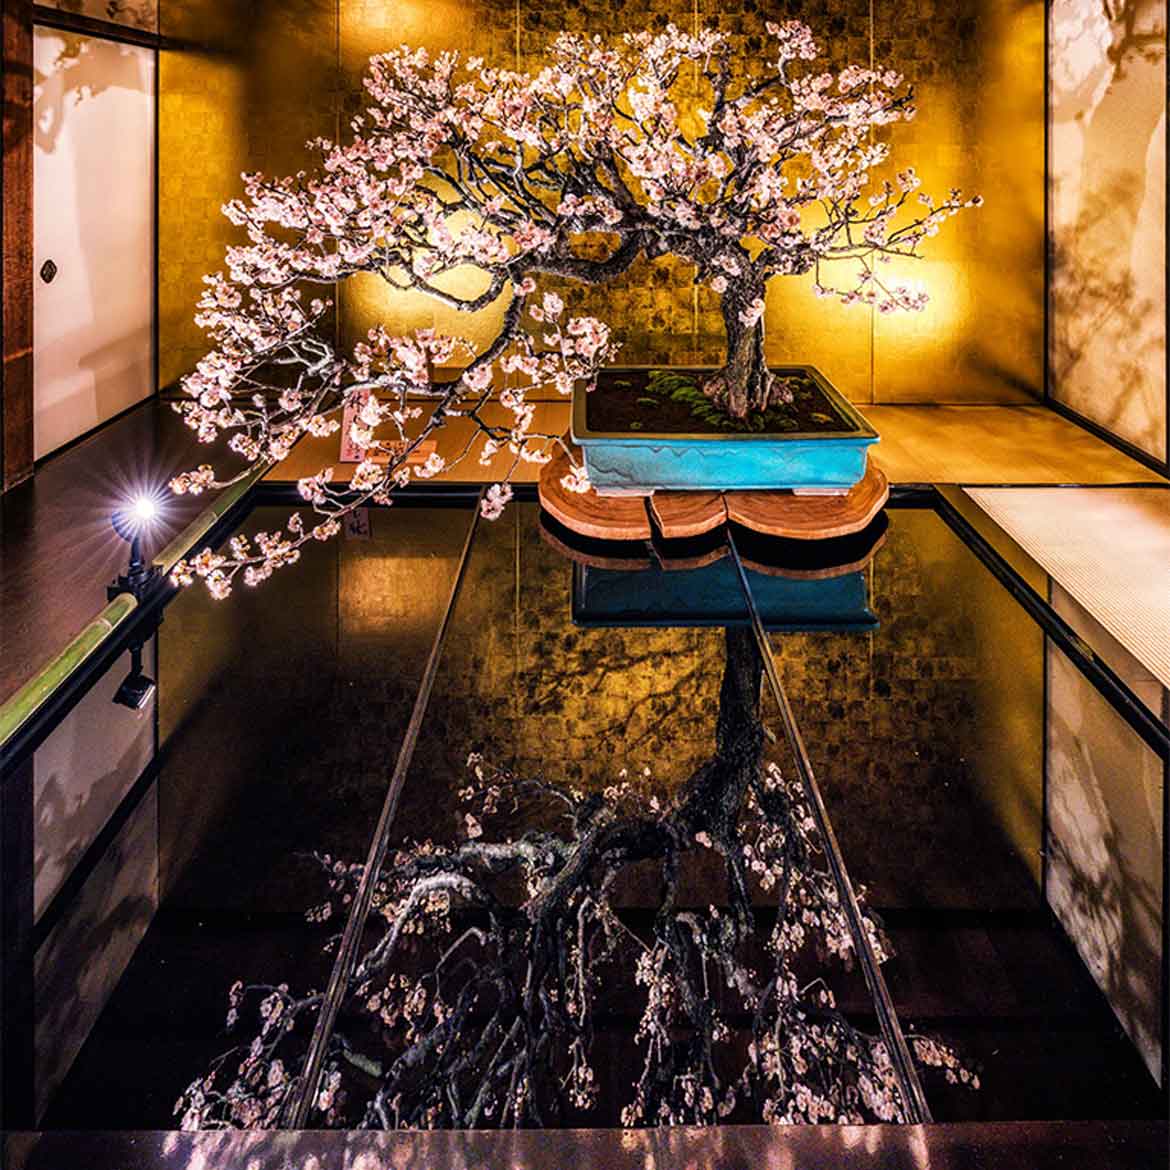 日本最大級の梅の盆栽展「第72回 長浜盆梅展」3/12まで開催！ライトアップや盆梅体験も